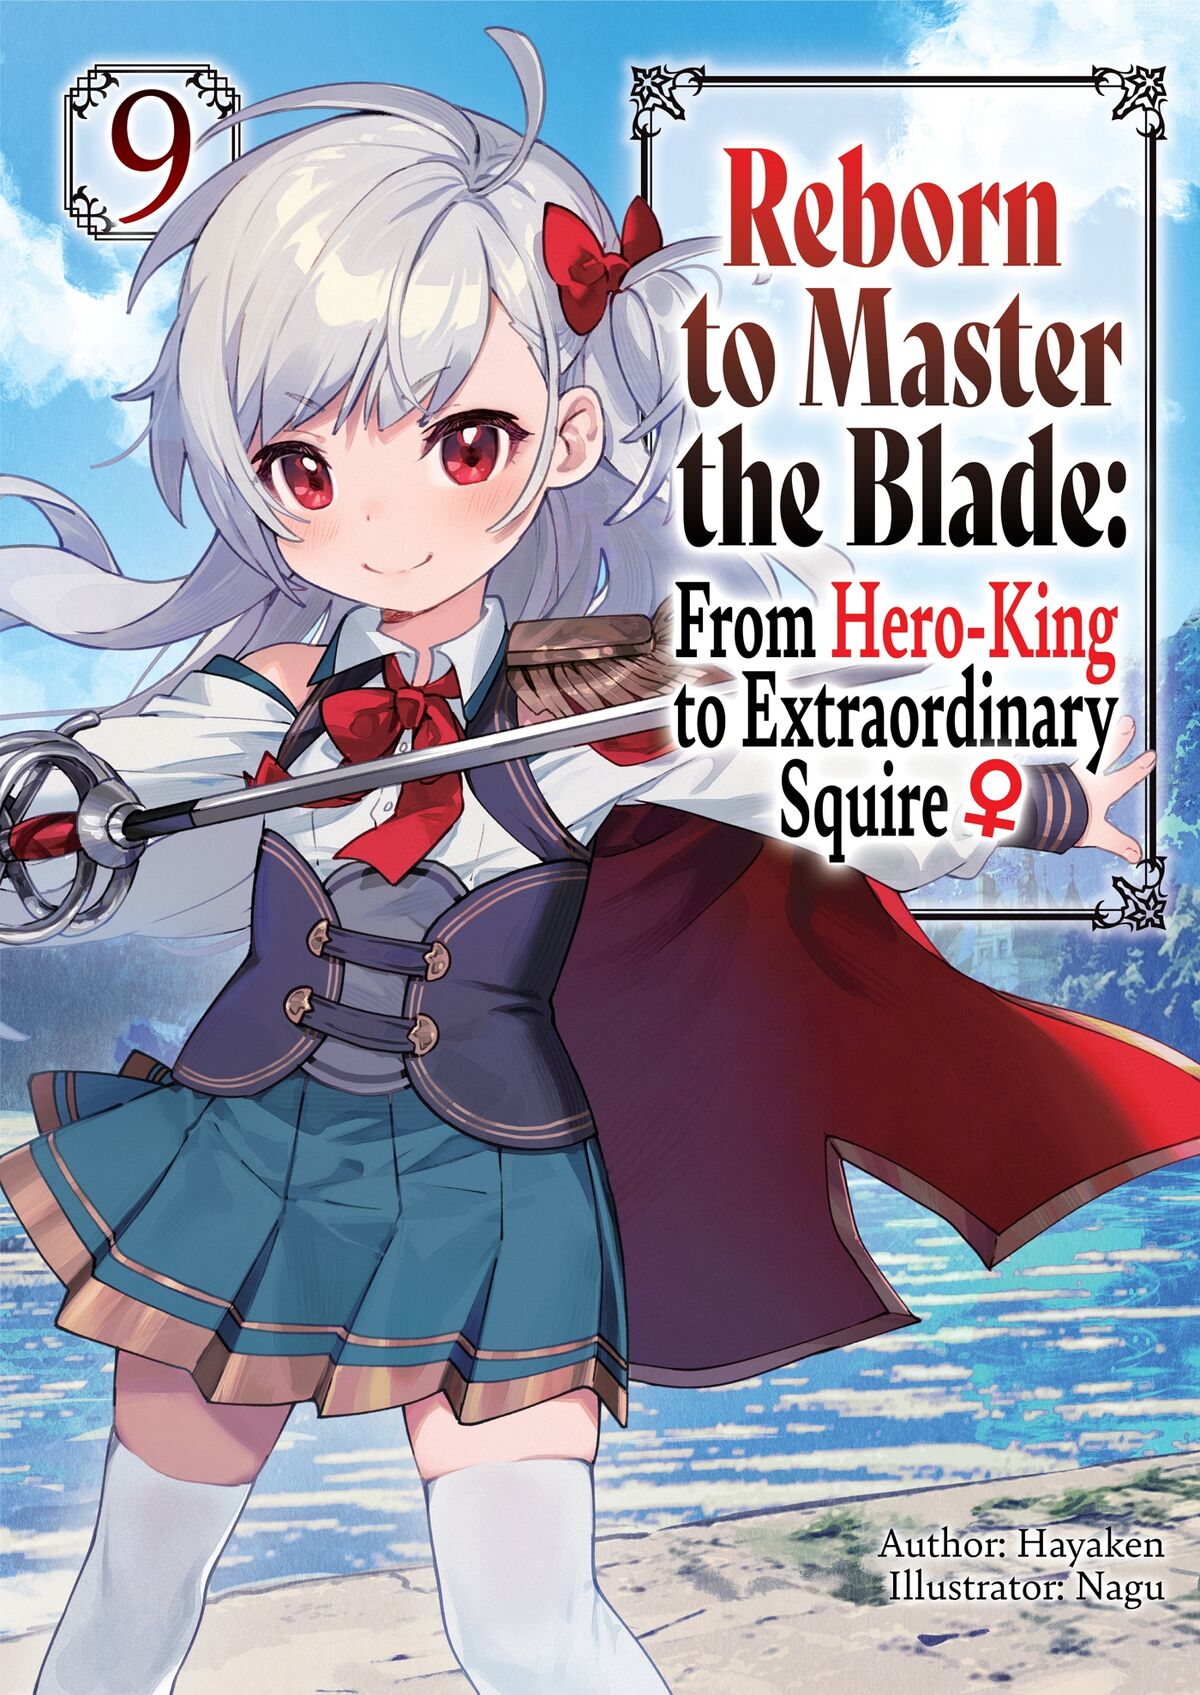 Eiyuuou, Bu wo Kiwameru Tame Tenseisu. Soshite, Sekai Saikyou no Minarai  Kishi♀ • Reborn to Master the Blade: From Hero-King to Extraordinary Squire  ♀ - Episode 7 discussion : r/anime